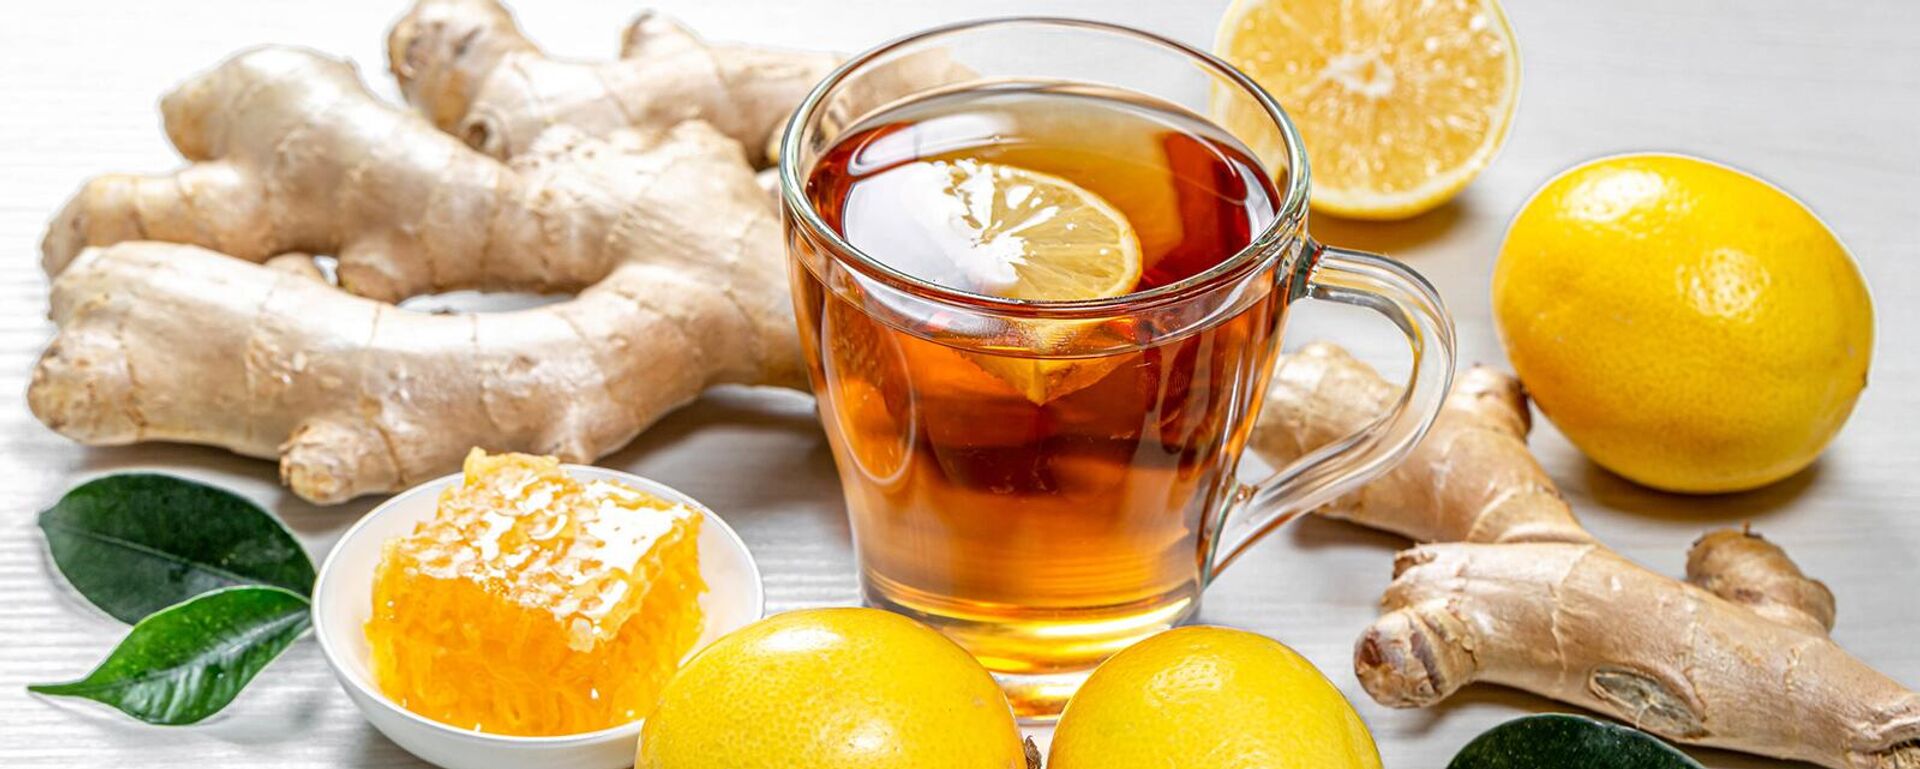 Чай с лимоном - Sputnik Армения, 1920, 29.01.2021